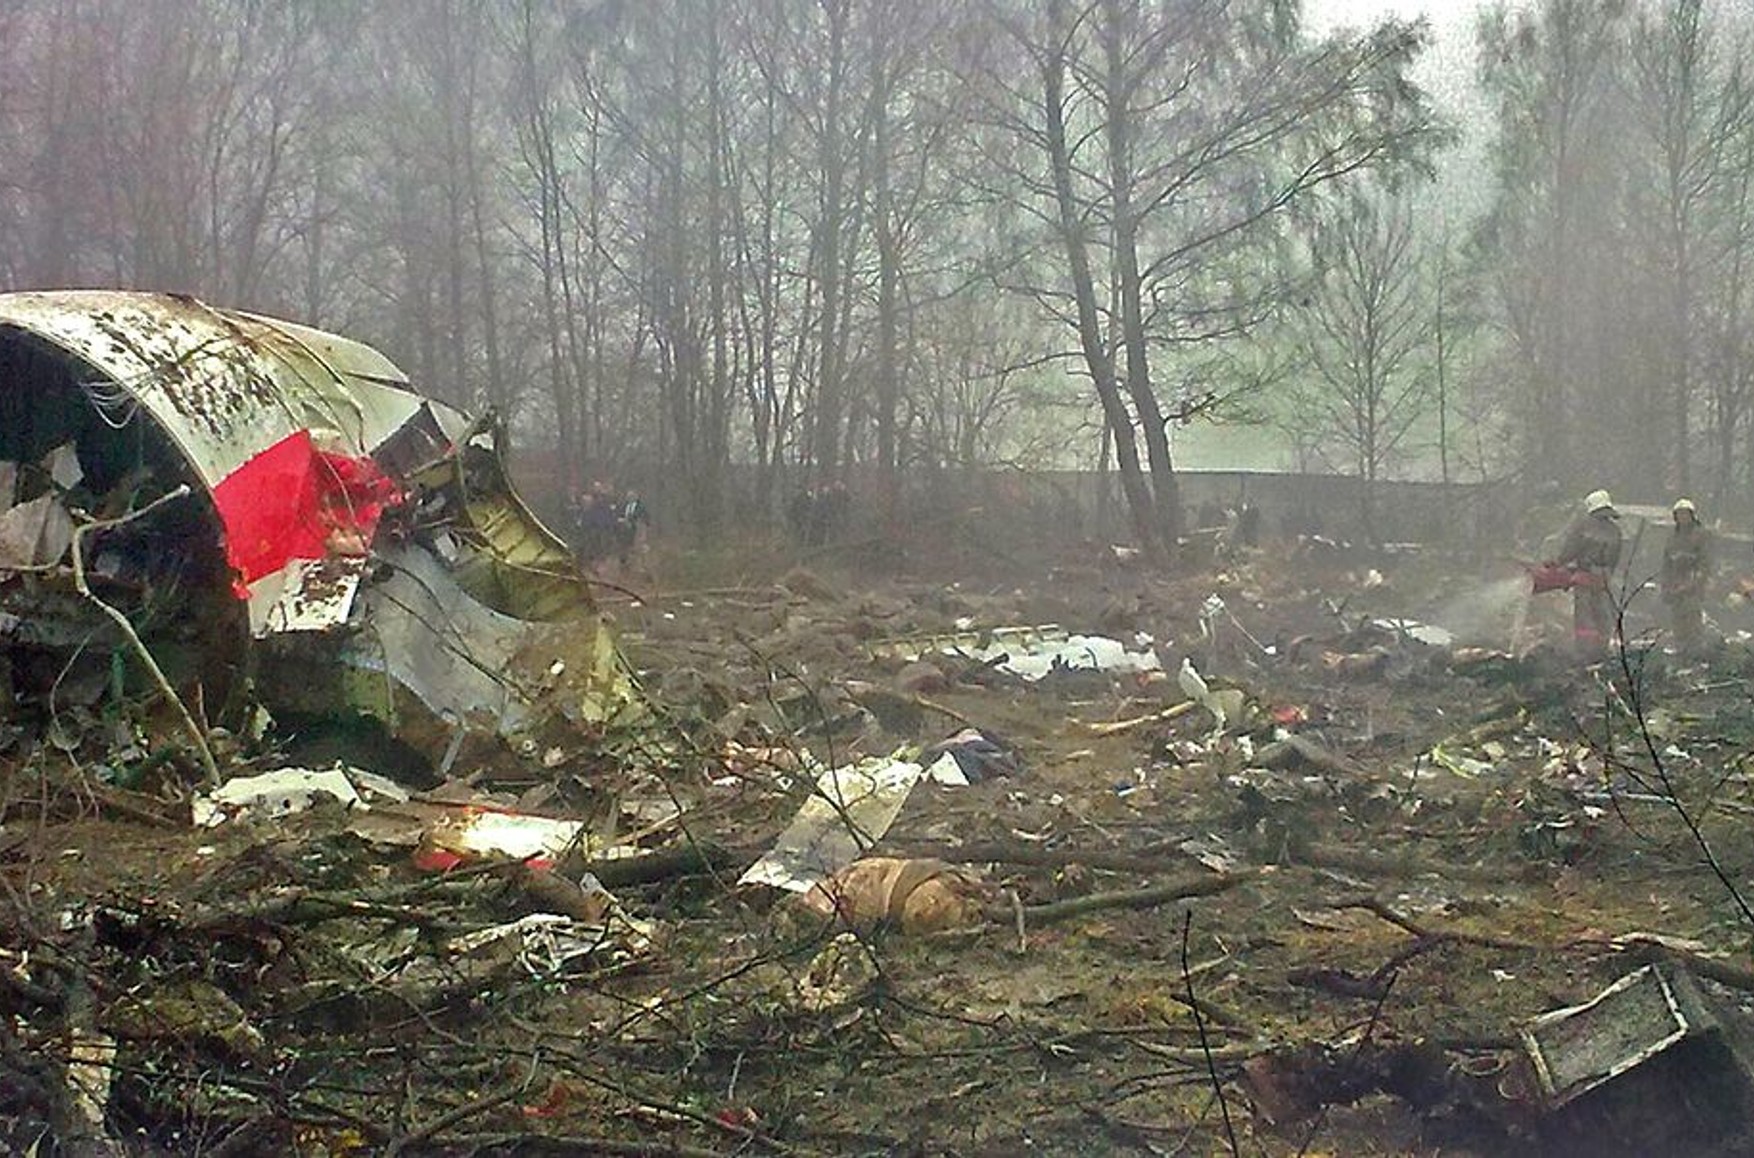 Росія запросила у Польщі дані про розмову Качиньського з братом перед катастрофою Ту-154